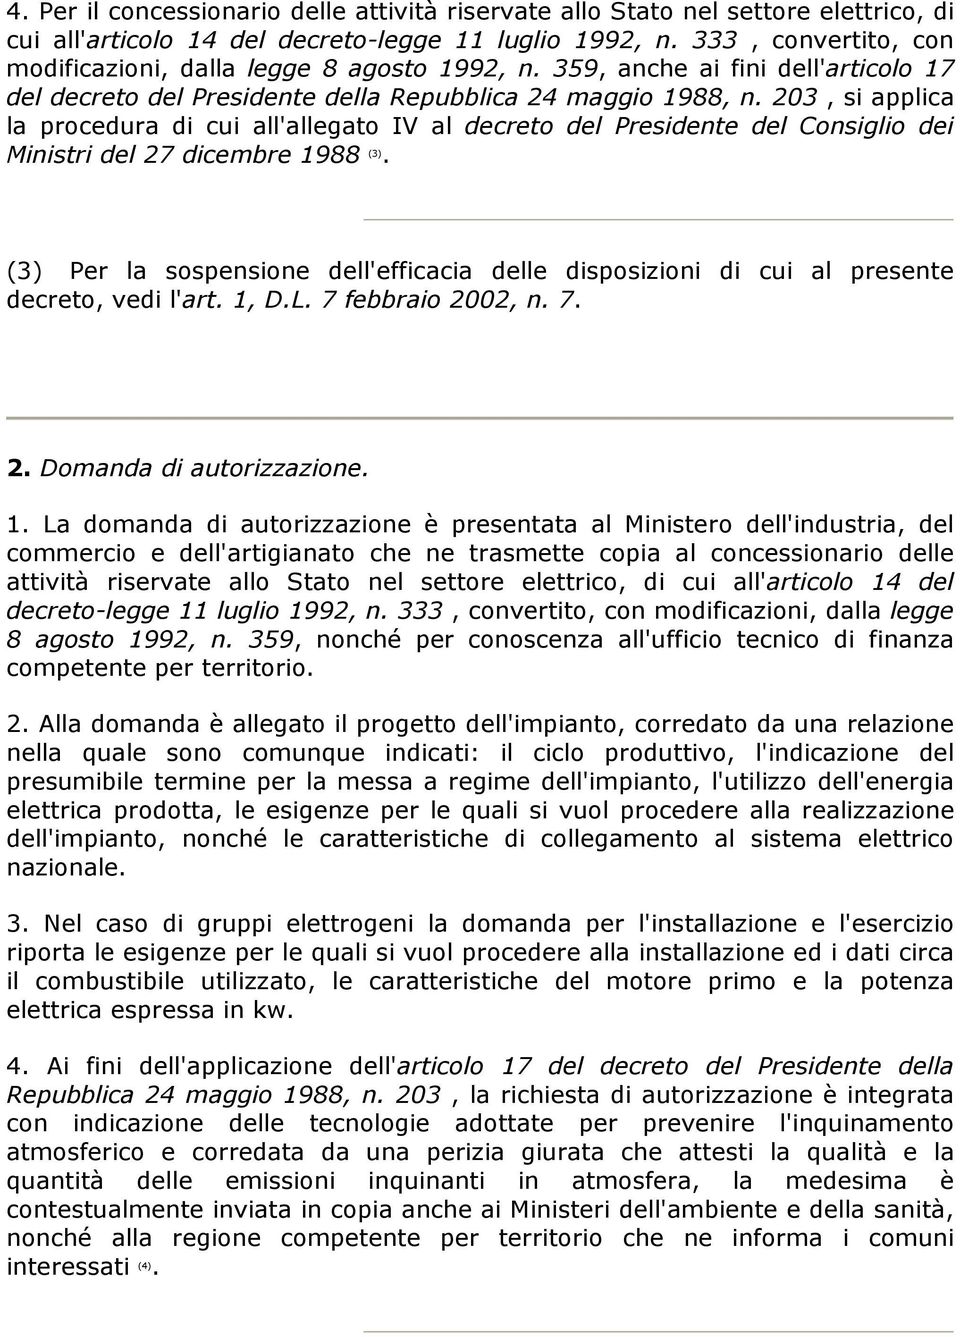 203, si applica la procedura di cui all'allegato IV al decreto del Presidente del Consiglio dei Ministri del 27 dicembre 1988 (3).